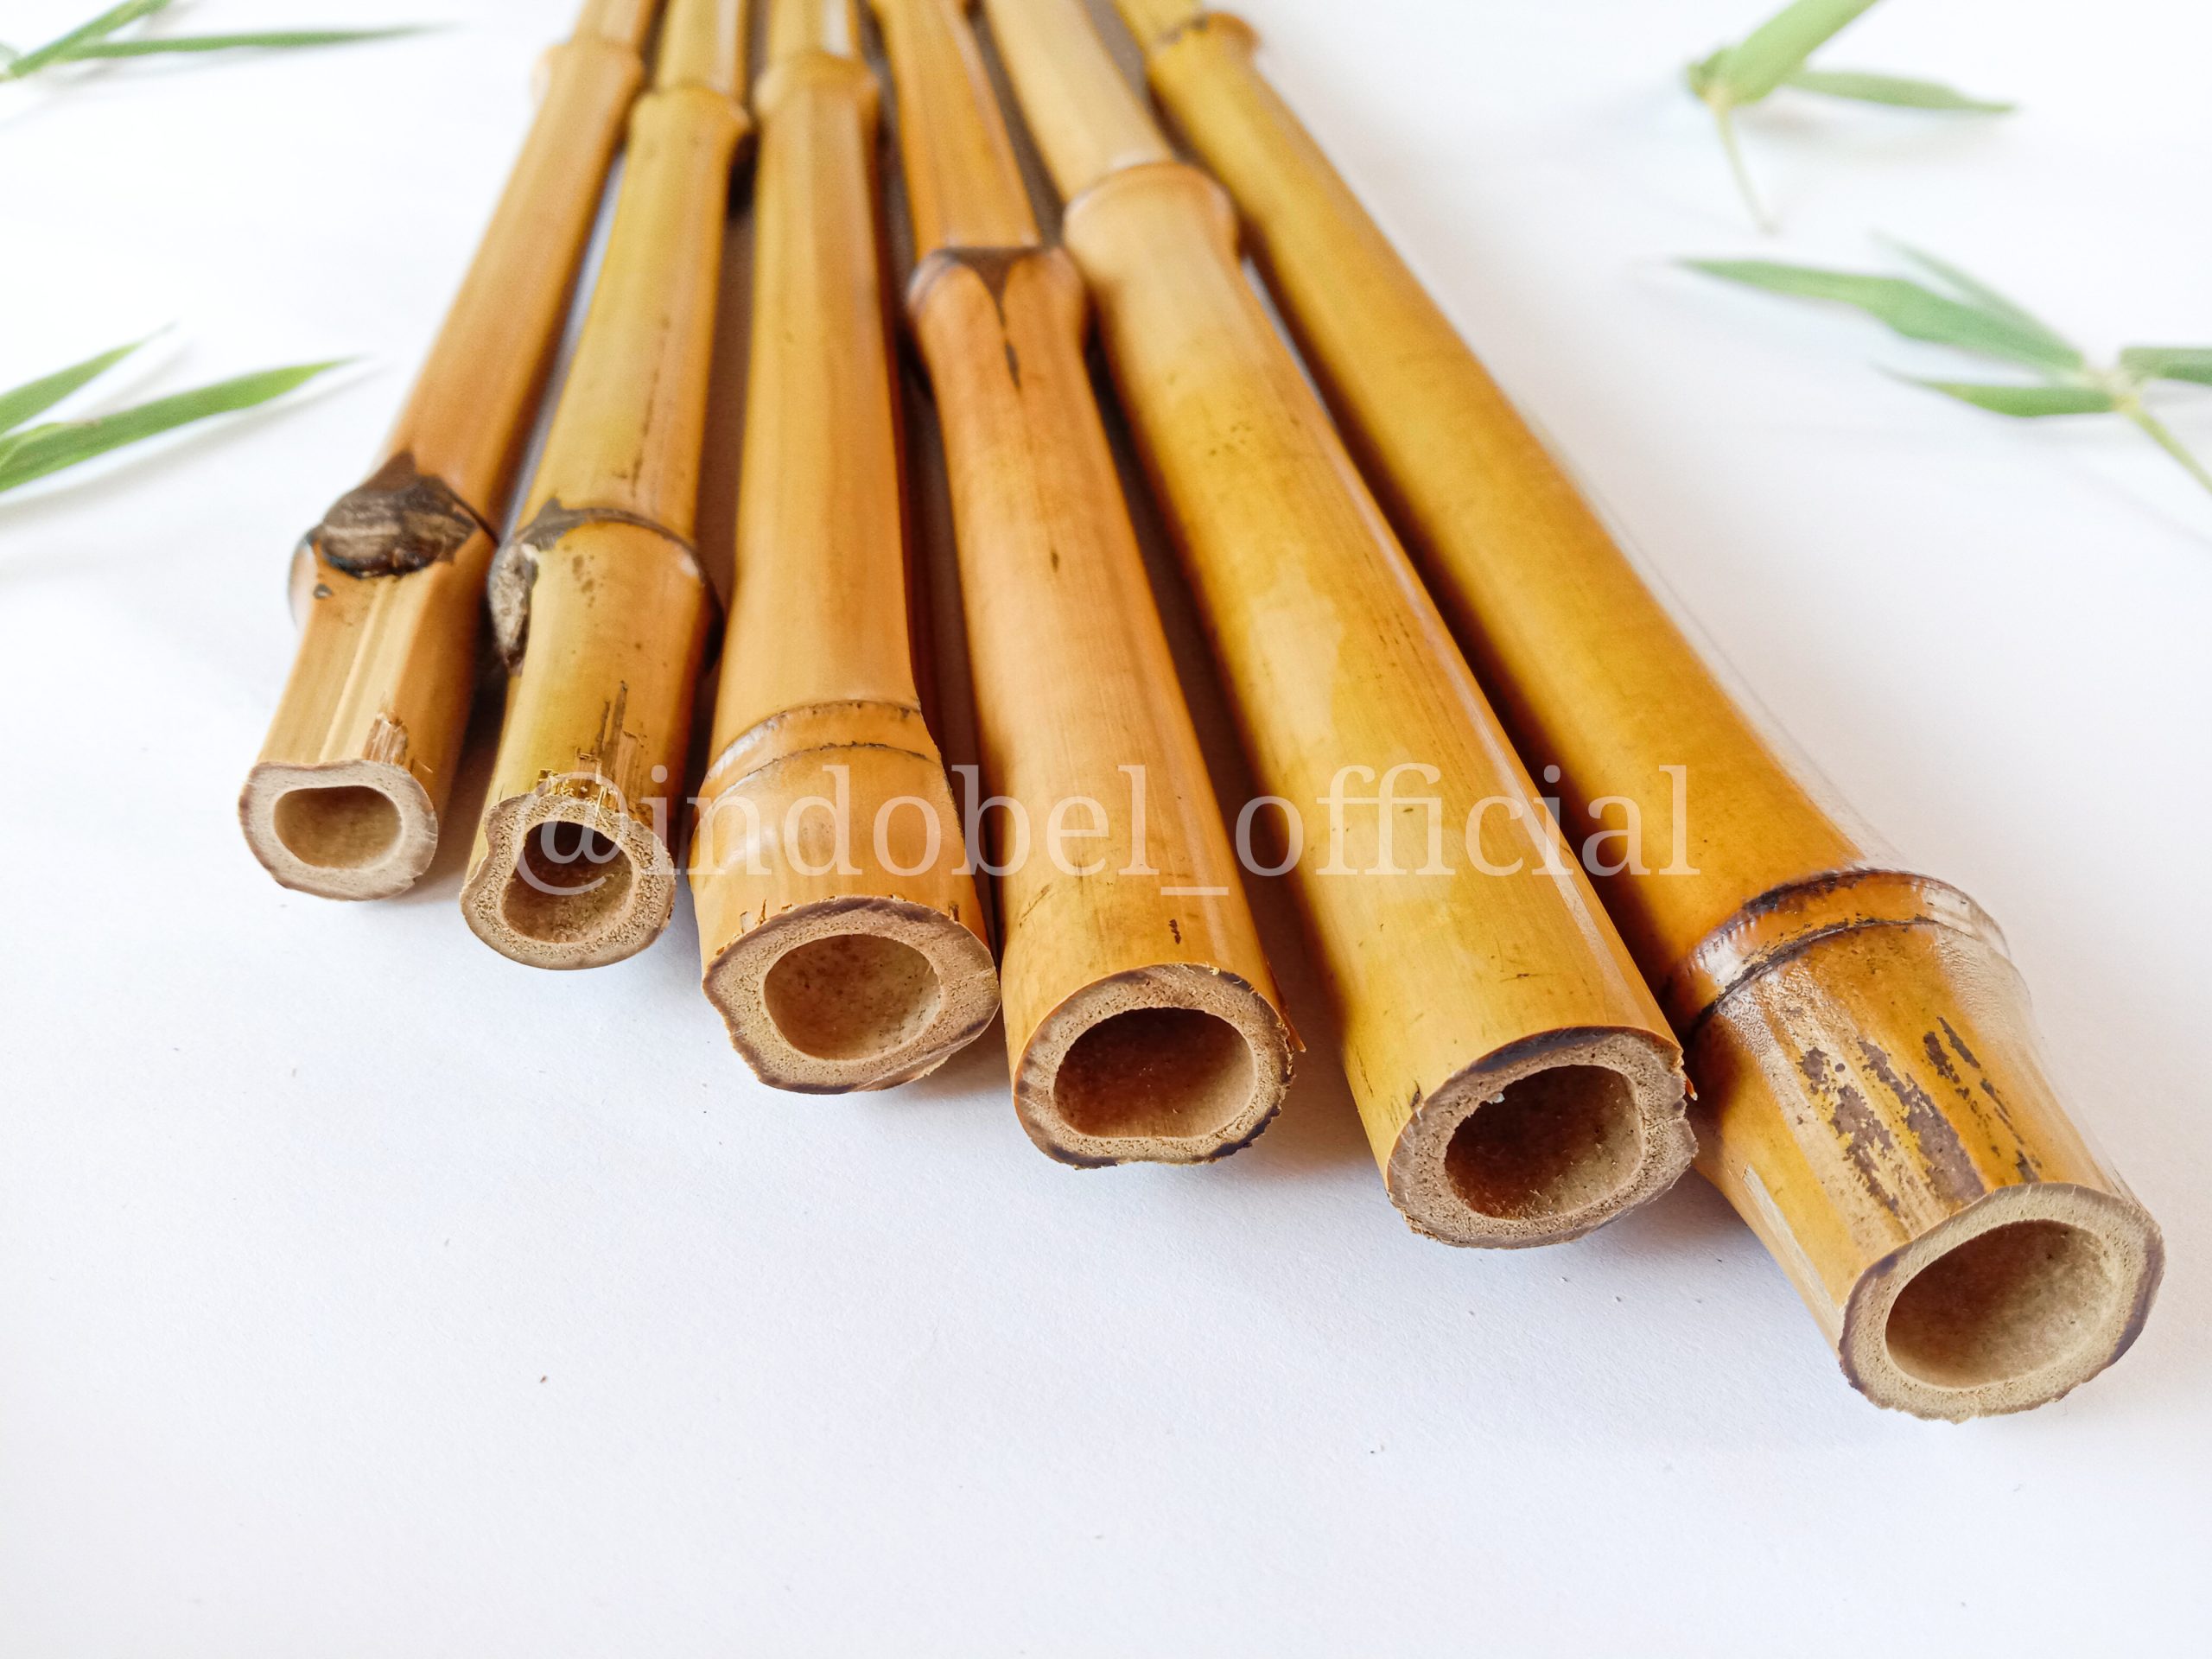 cane bamboo cendani gading